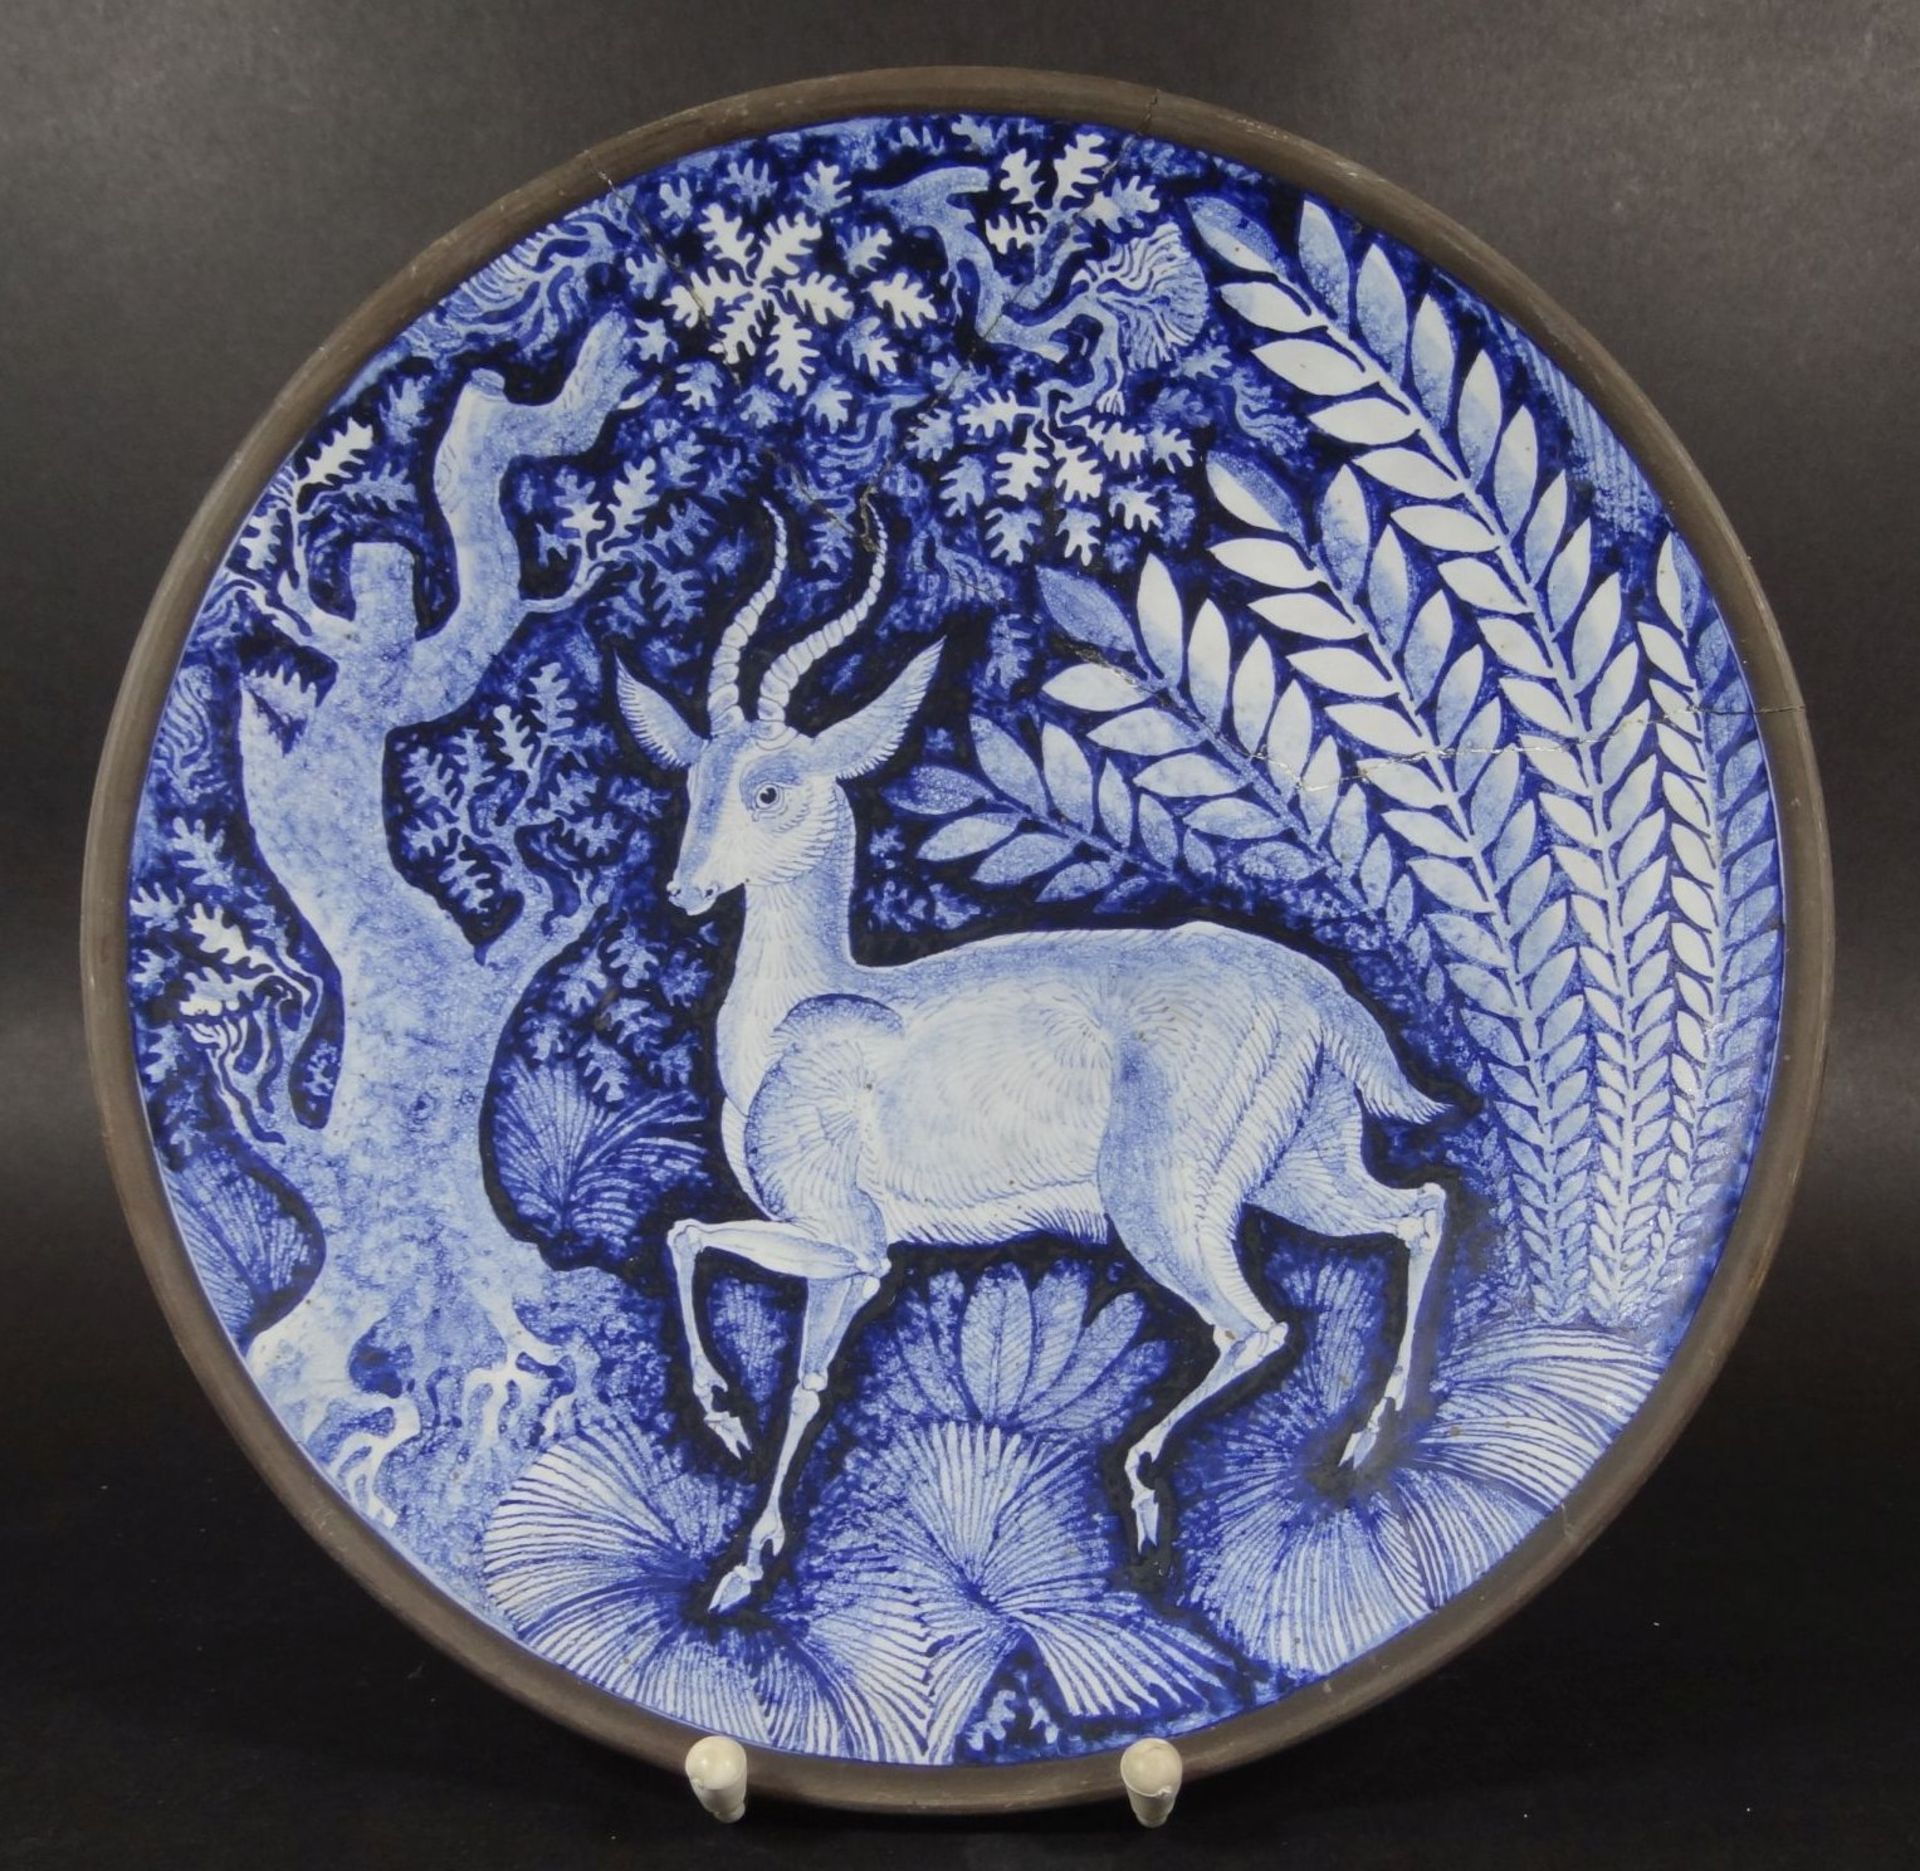 Siegfried MÖLLER (1896-1970), Keramikschale bemalt mit Antilope, verso signiert,Schale geklebt, H-